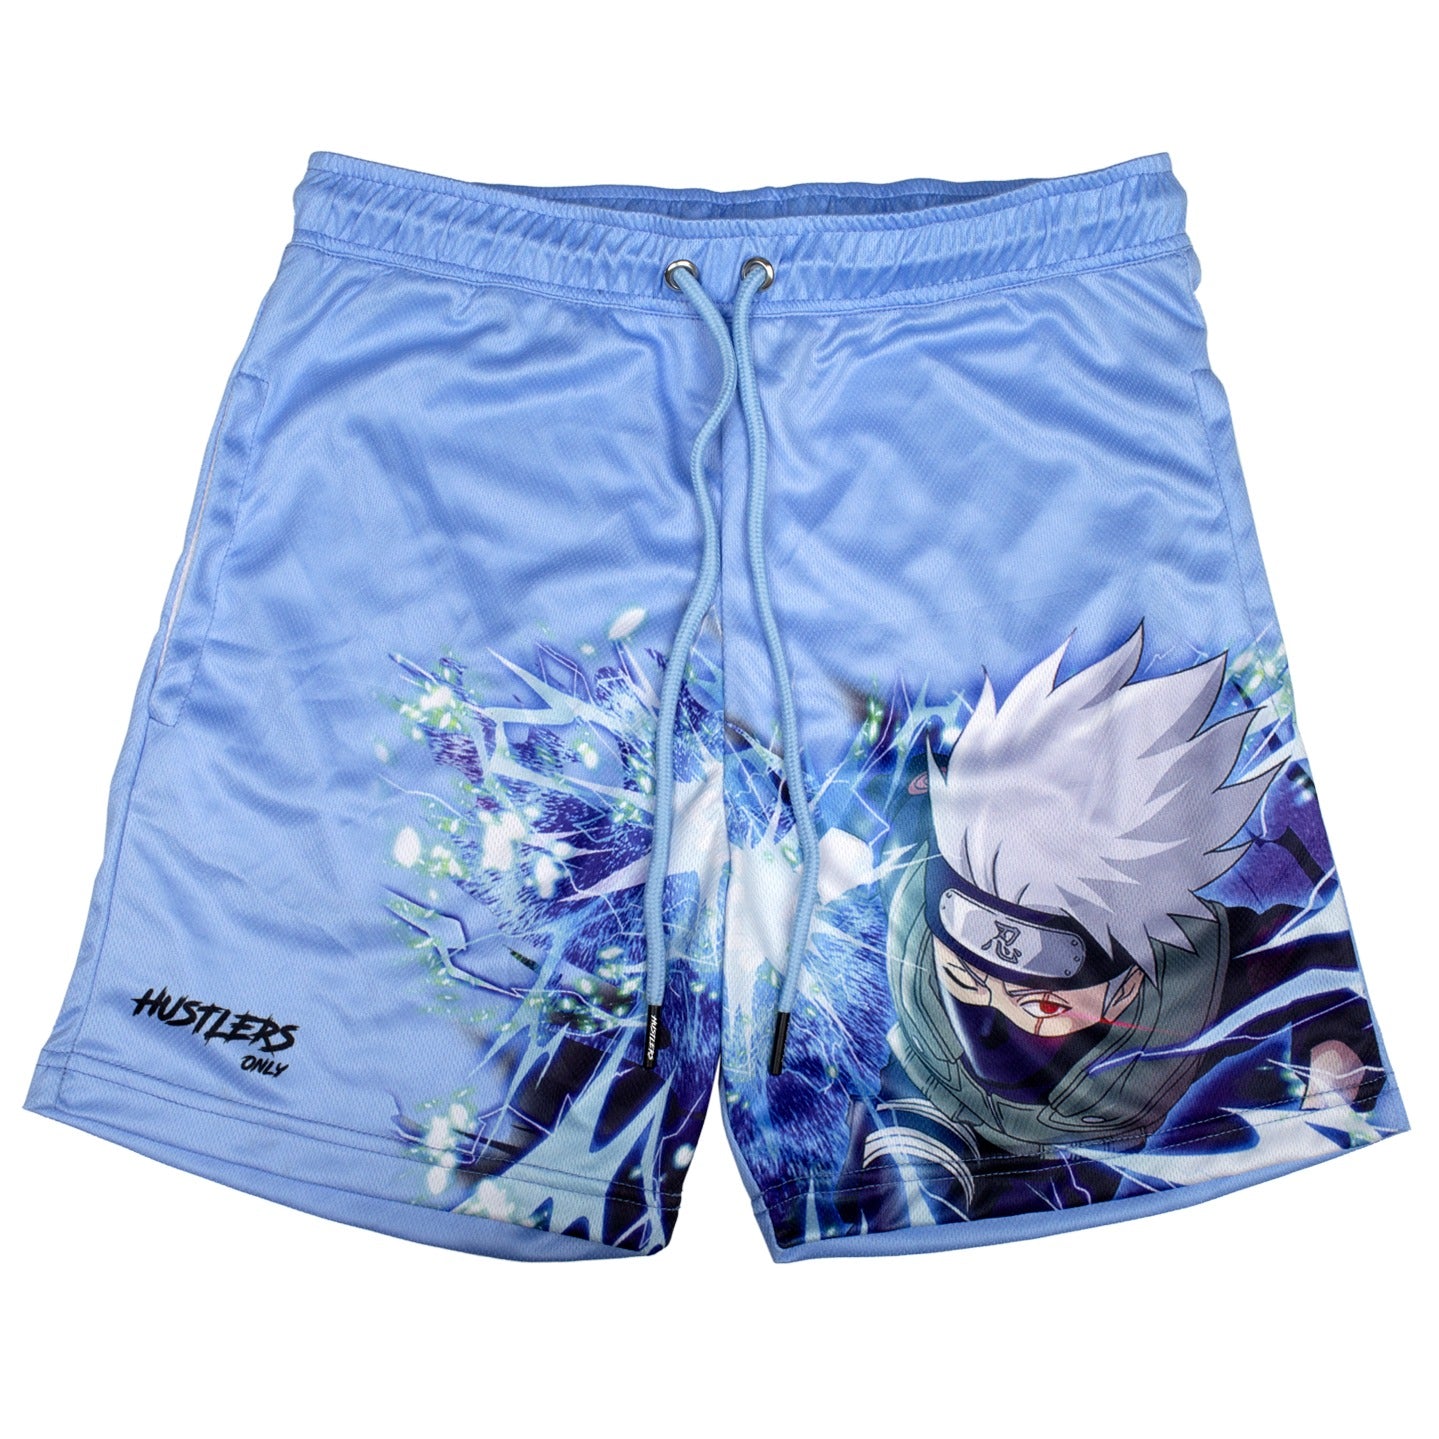 Naruto Uzumaki Shorts For Gym | HustlersOnlyUK